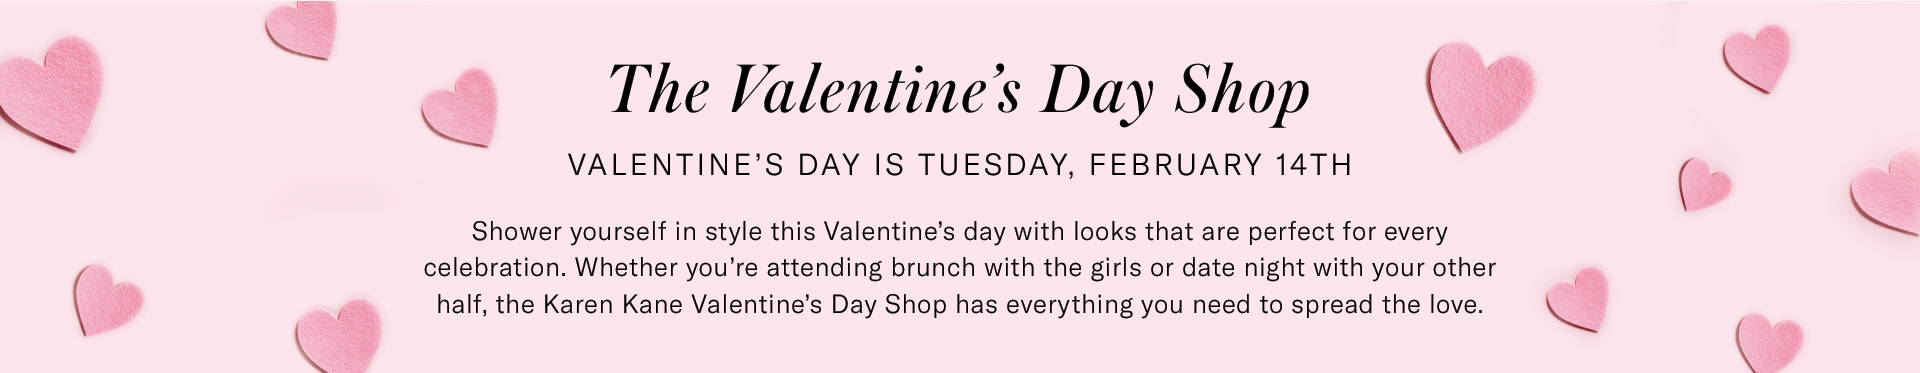 Valentine's Day Shop